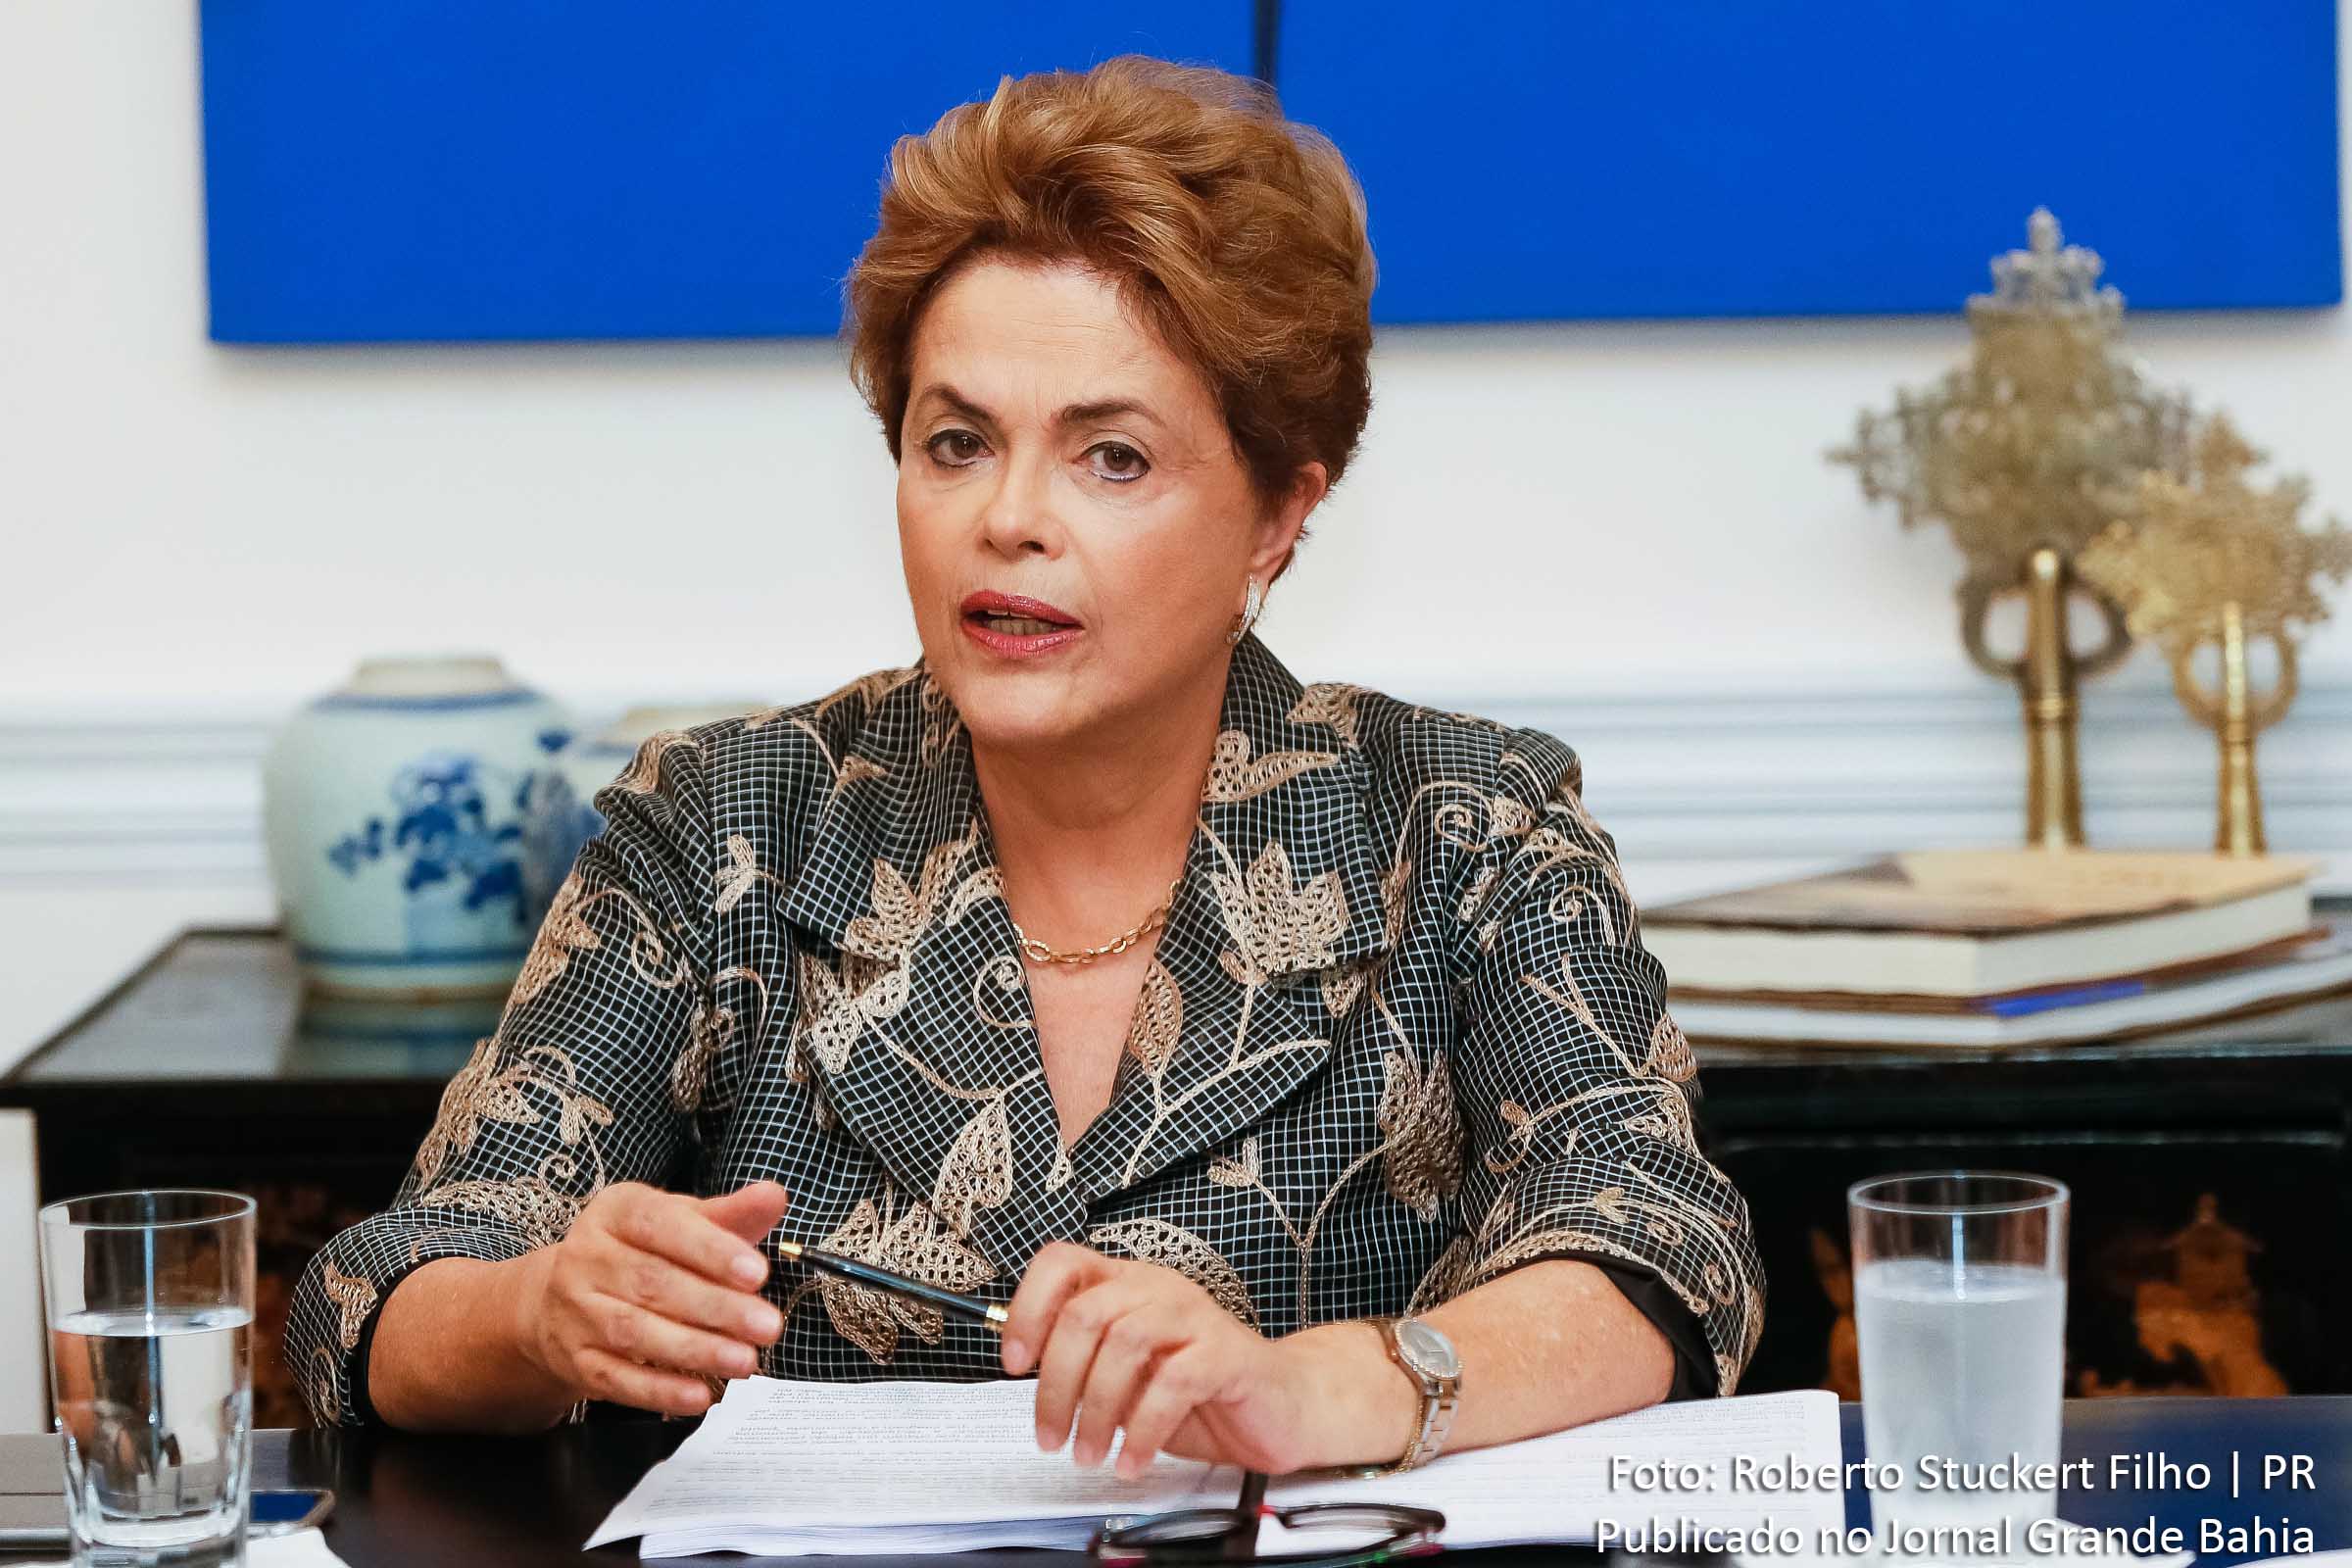 Presidente Dilma Rousseff denunciou à imprensa internacional que existe um Golpe de Estado em curso no Brasil.